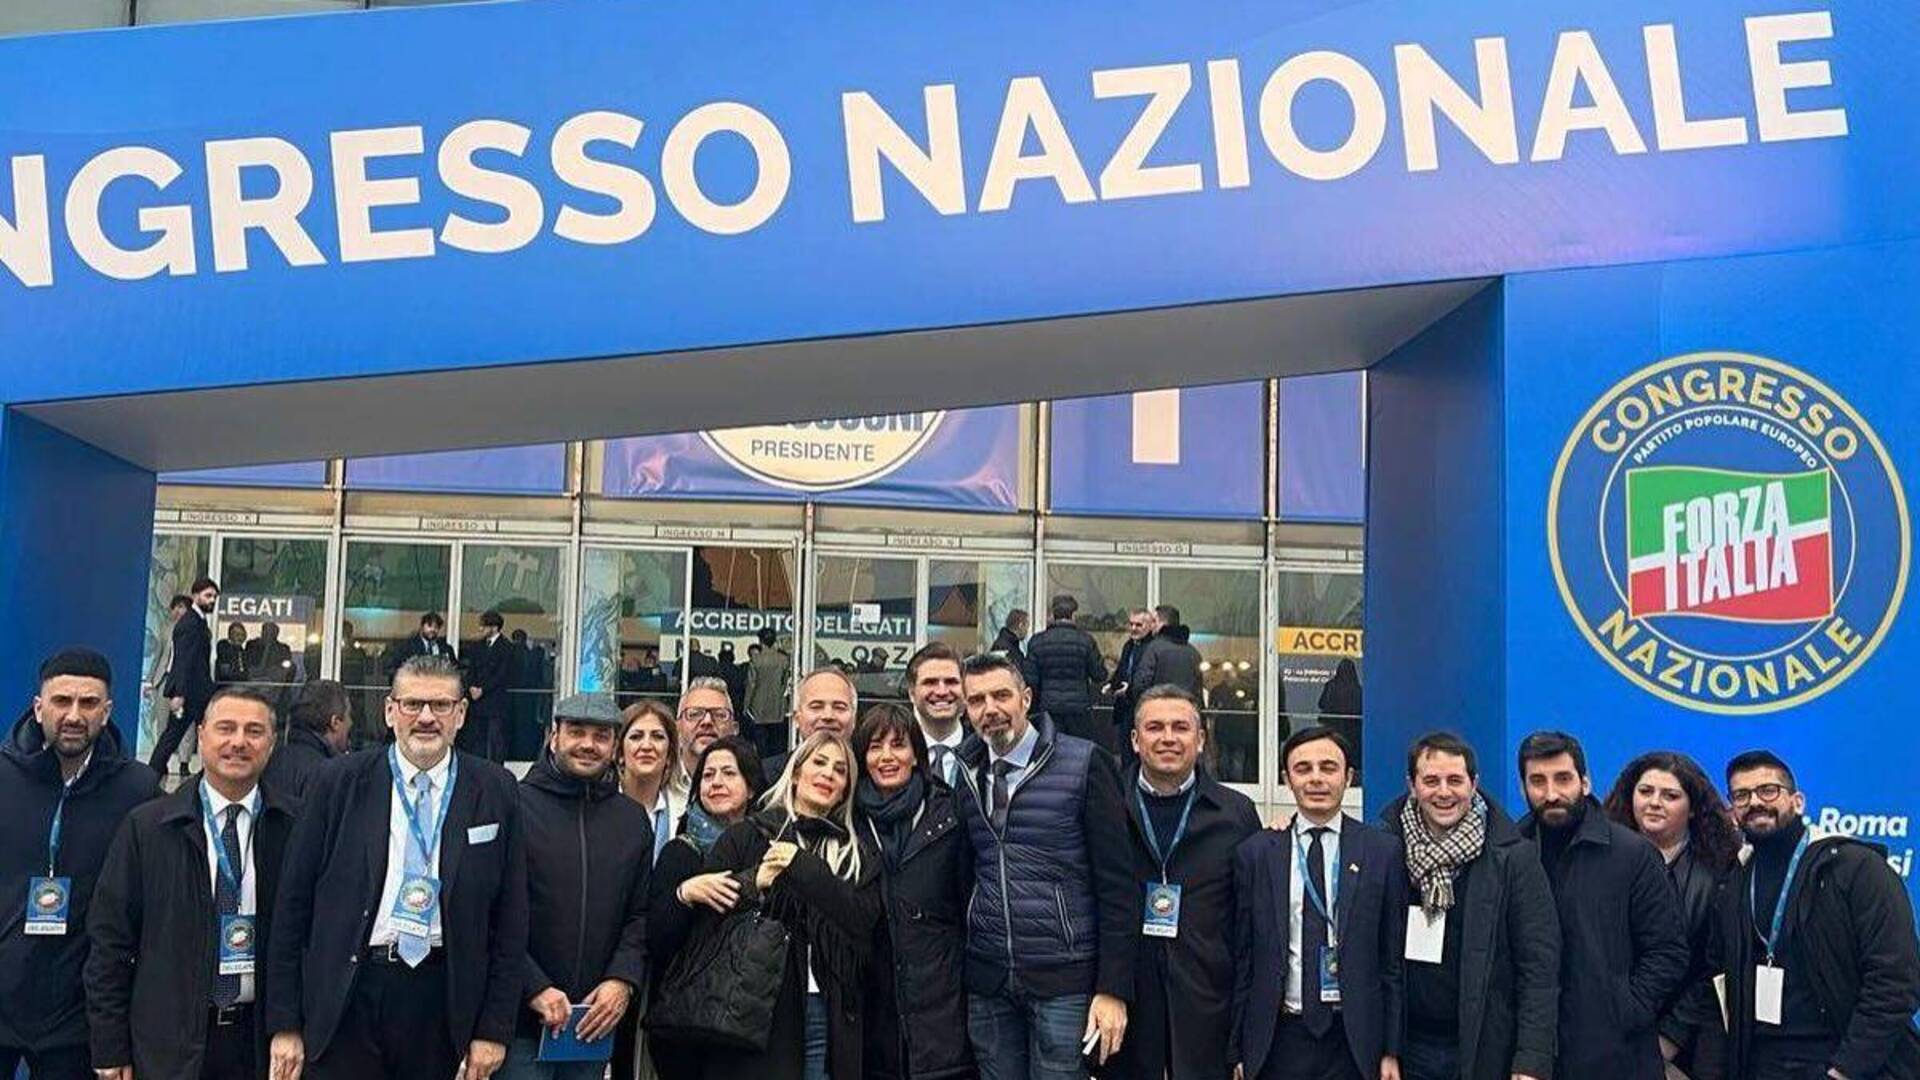 Lara Comi al congresso nazionale di Forza Italia: “Grazie a tutti i militanti”